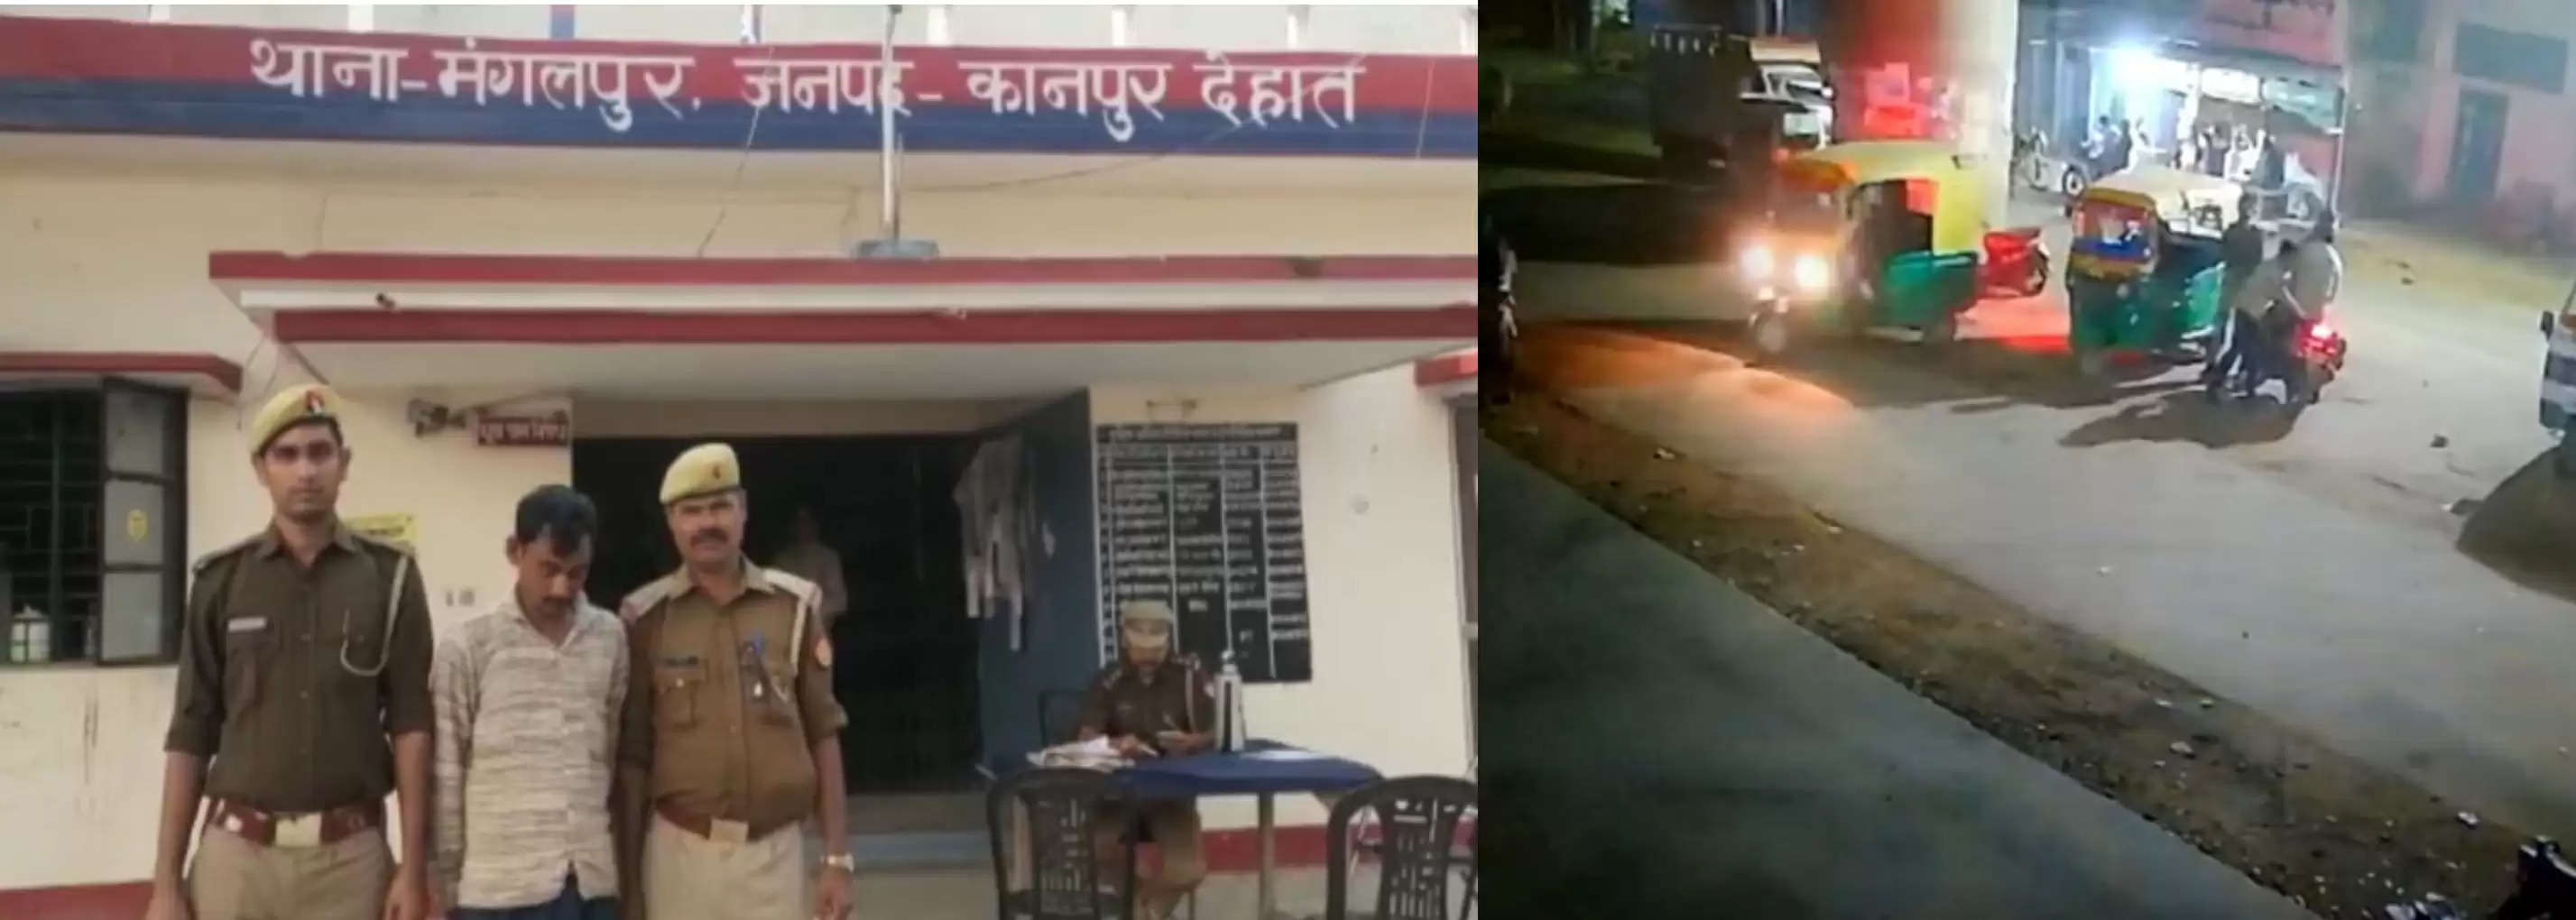 कानपुर देहात : पुलिस के गुडवर्क पर एक सीसीटीवी ने खड़े किए कई सवाल